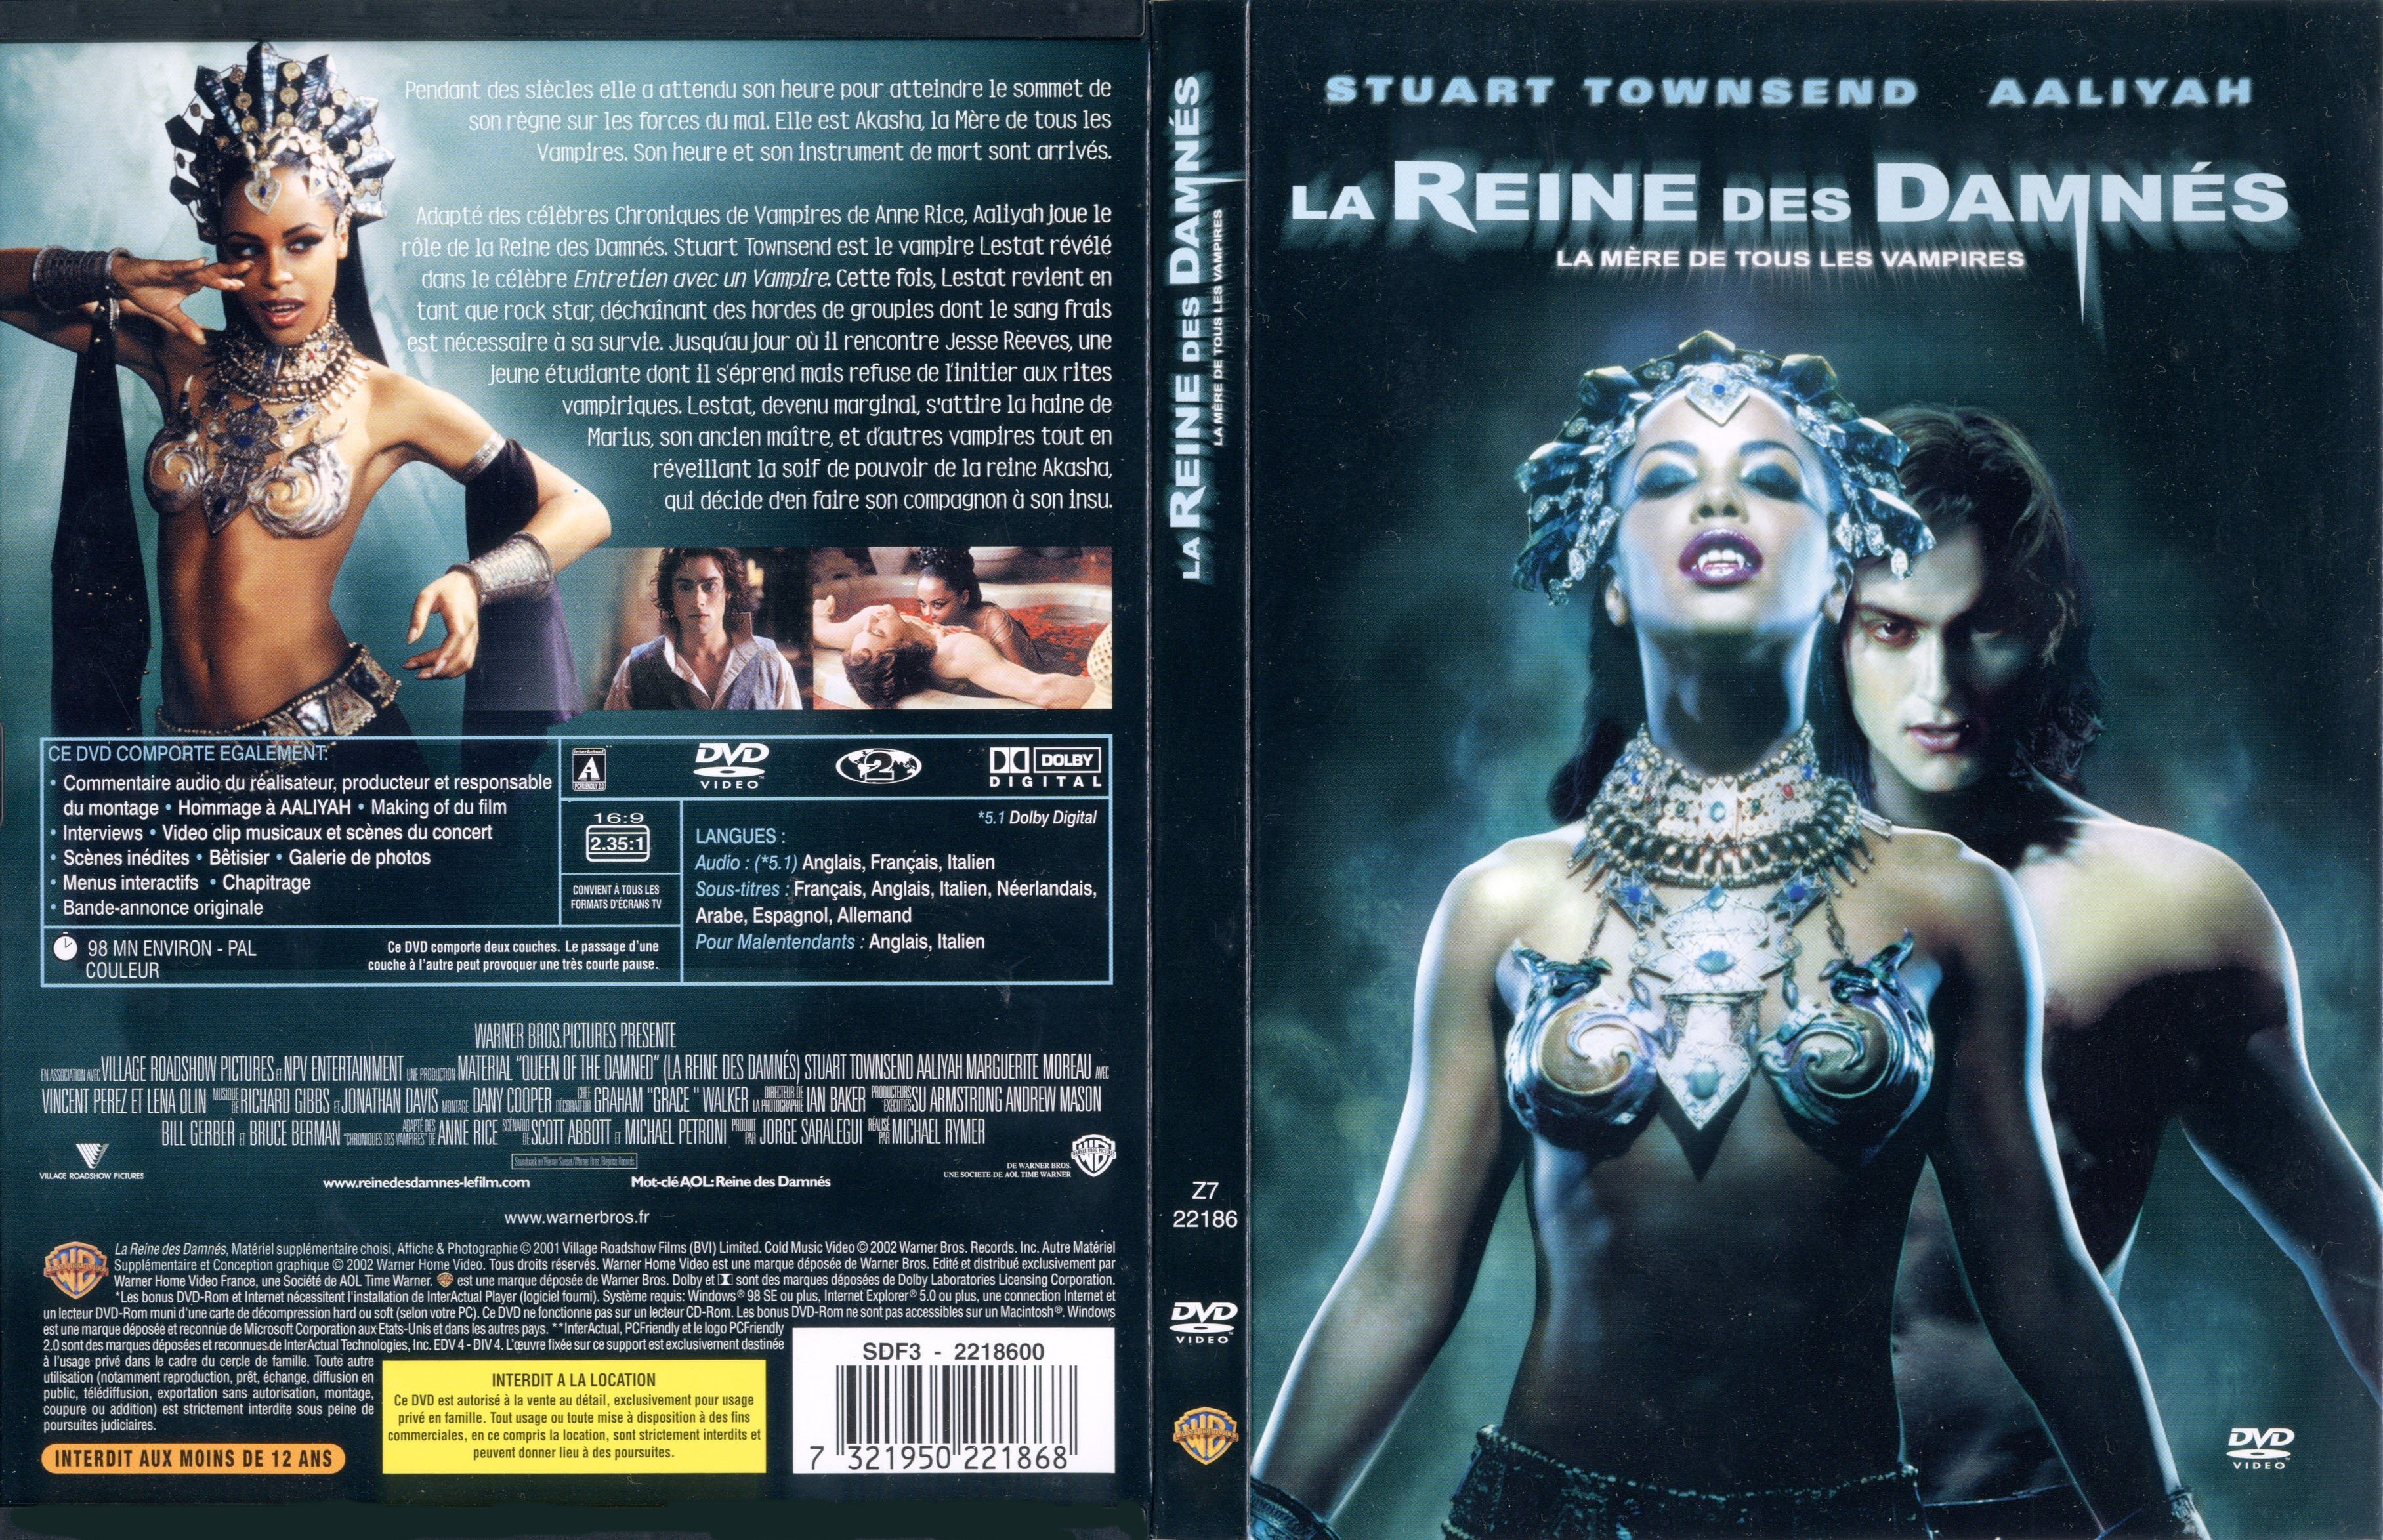 Jaquette DVD La reine des damns